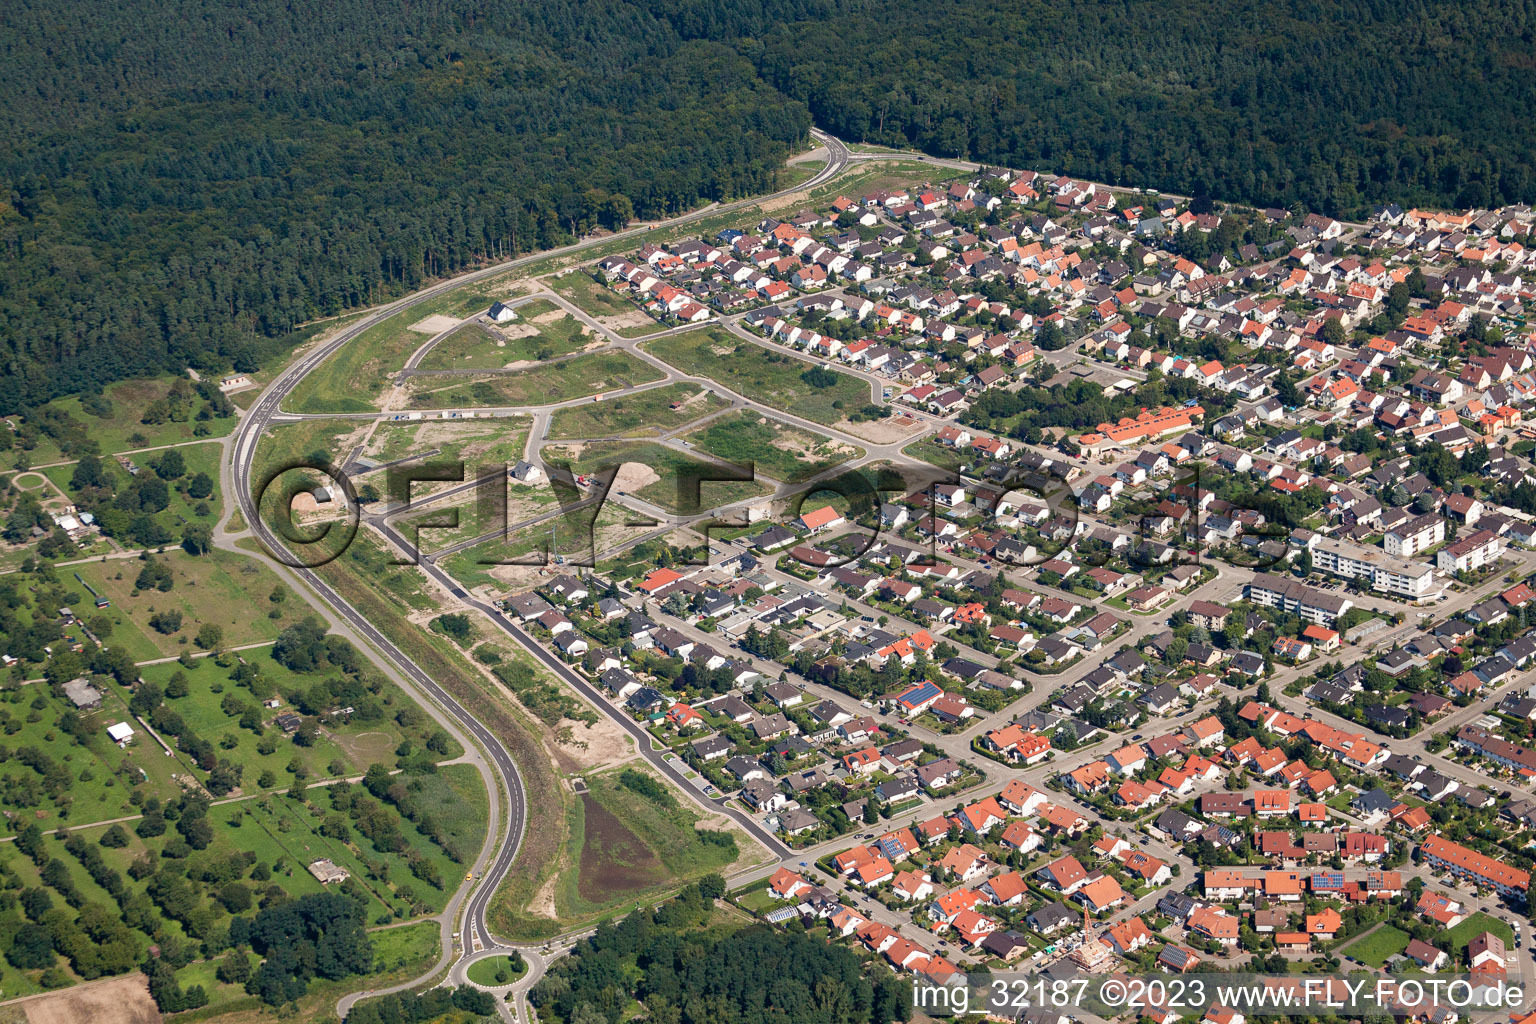 Luftbild von Jockgrim im Bundesland Rheinland-Pfalz, Deutschland